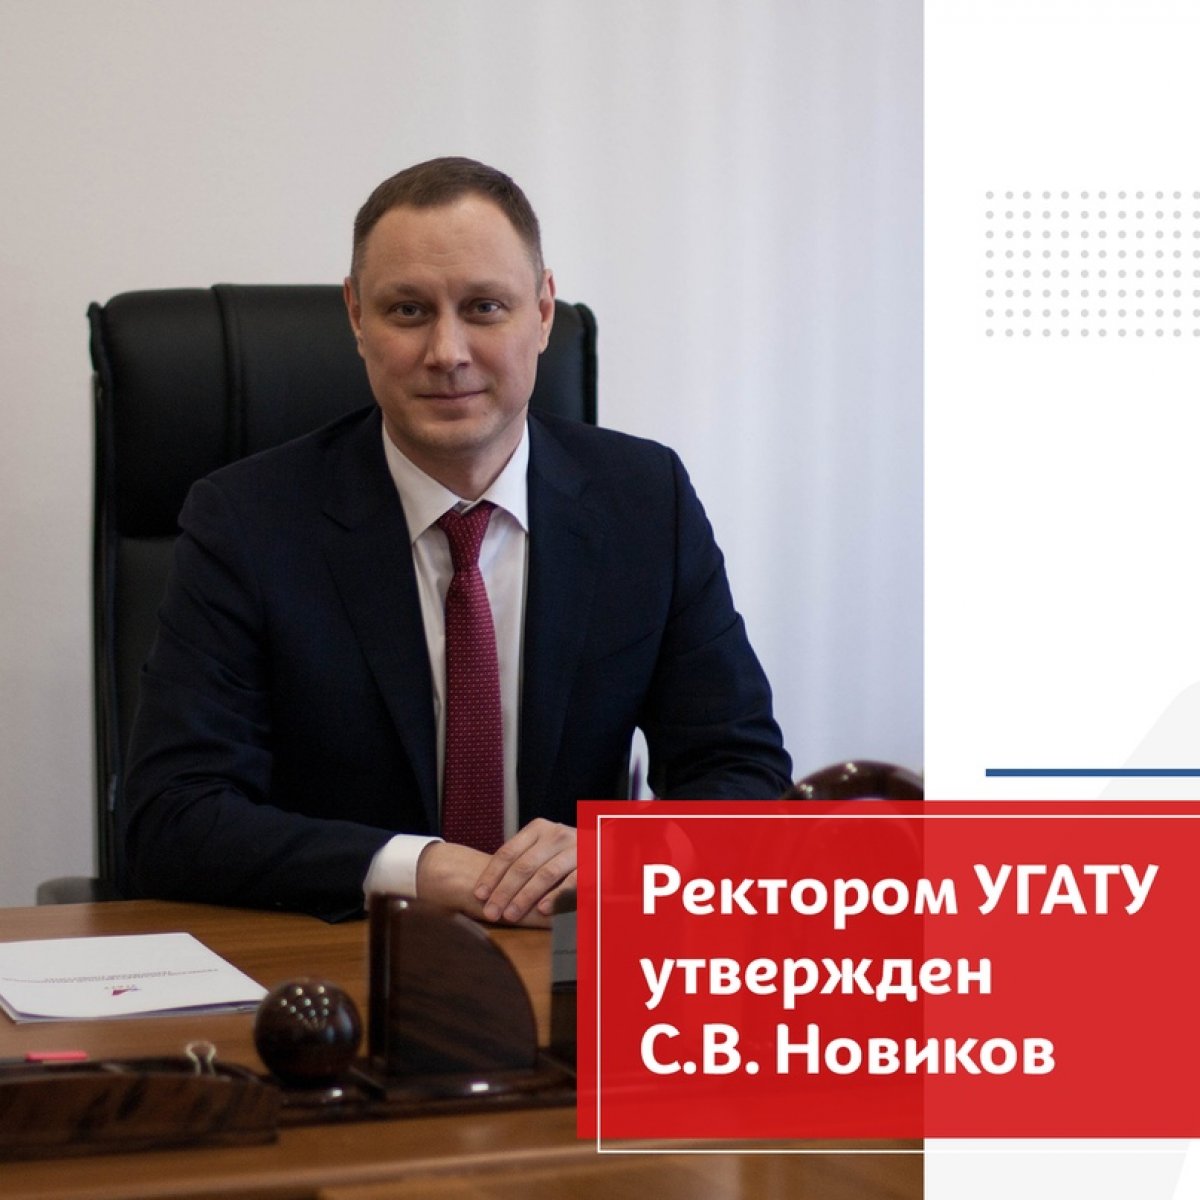 Сергей Владимирович Новиков утвержден в должности ректора УГАТУ с 8 сентября 2020 года по 7 сентября 2025 года сроком на 5 лет. 💥